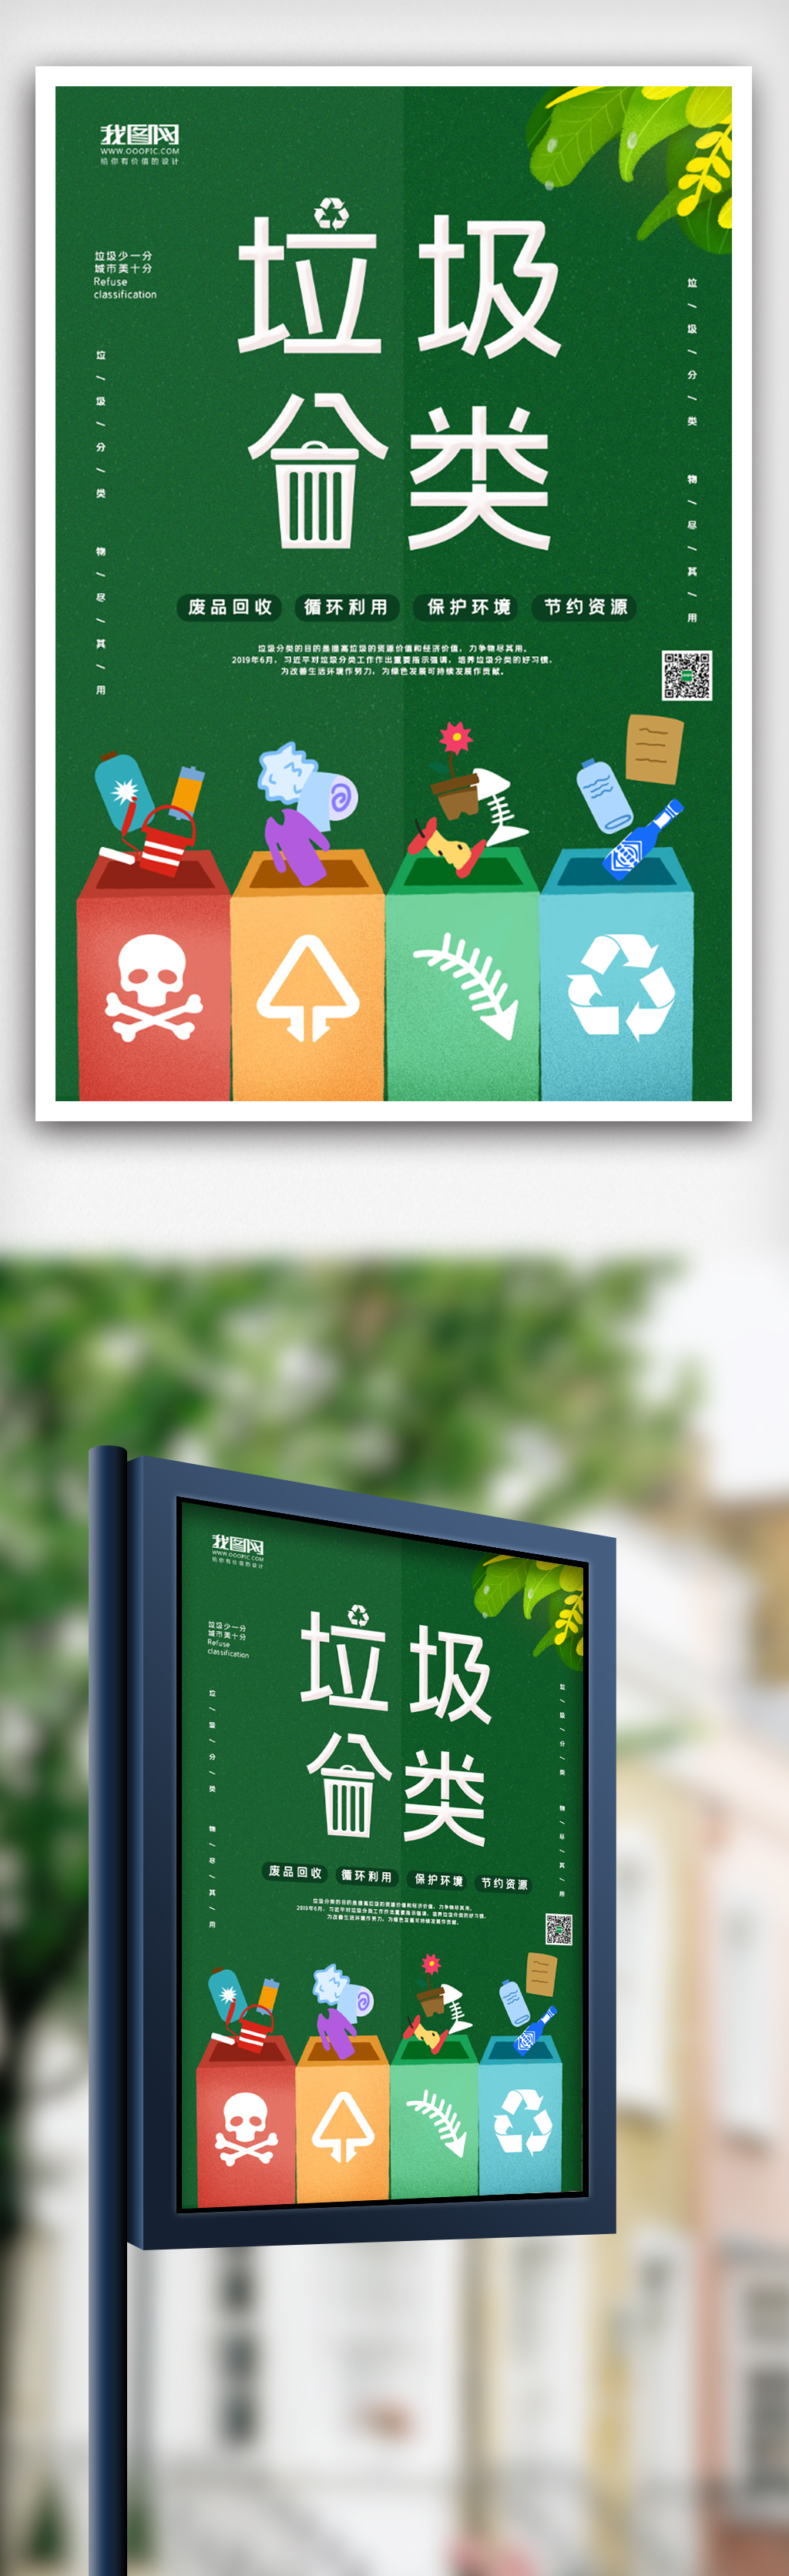 垃圾分类保护环境海报设计图片